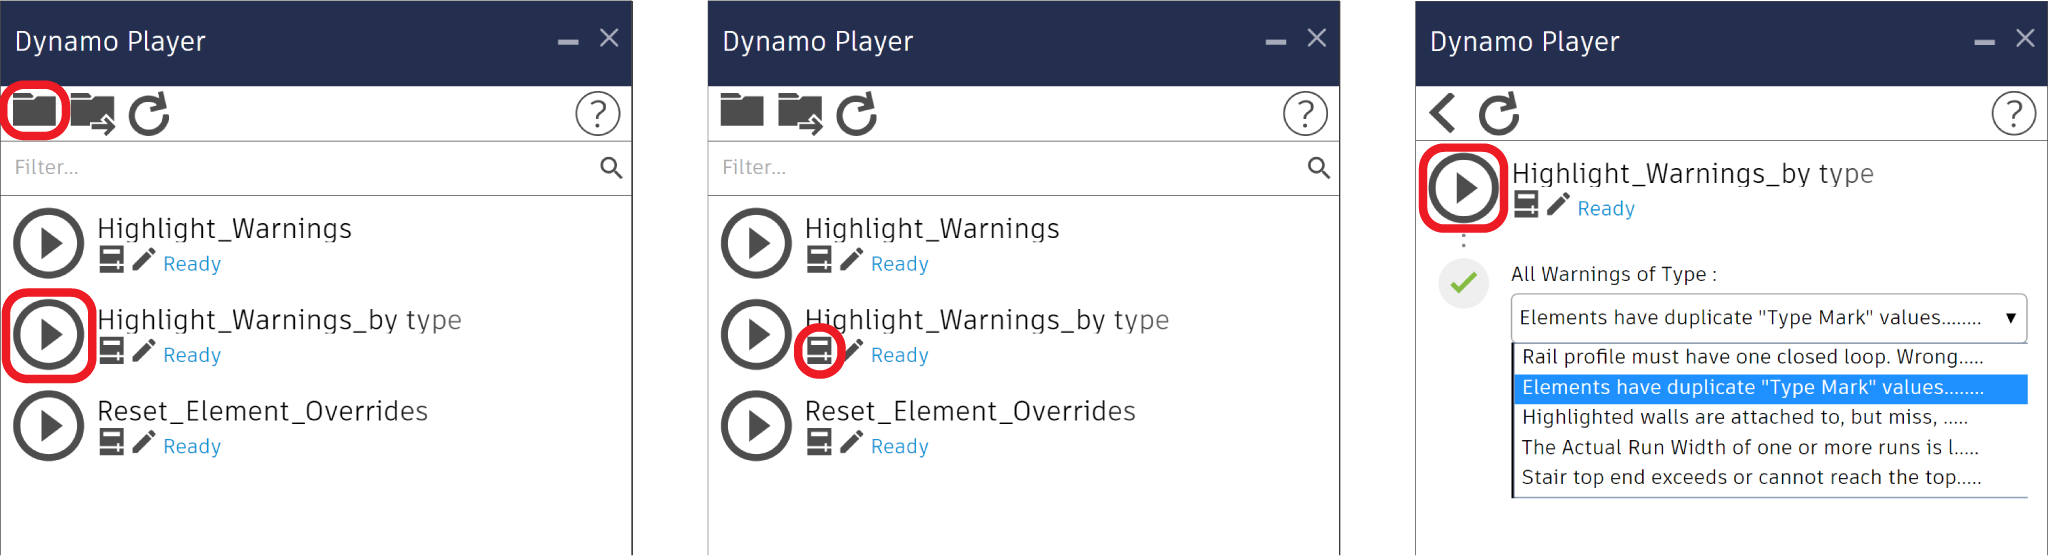 Dynamo-Player-Eingänge bearbeiten